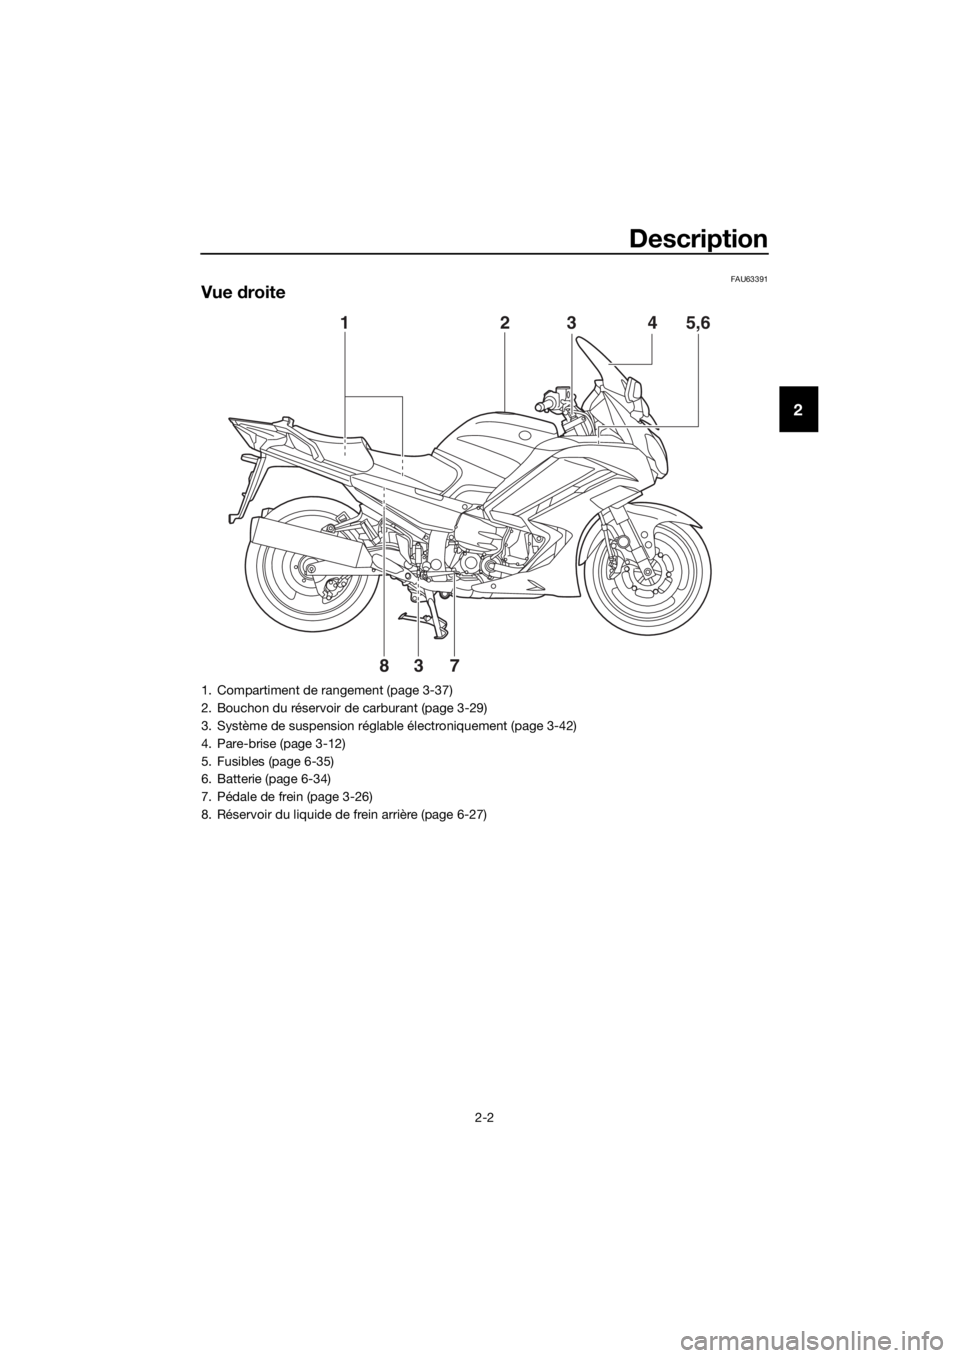 YAMAHA FJR1300AE 2016  Notices Demploi (in French) Description
2-2
2
FAU63391
Vue droite
78 5,6
4
32
1
3
1. Compartiment de rangement (page 3-37)
2. Bouchon du réservoir de carburant (page 3-29)
3. Système de suspension réglable électroniquement (